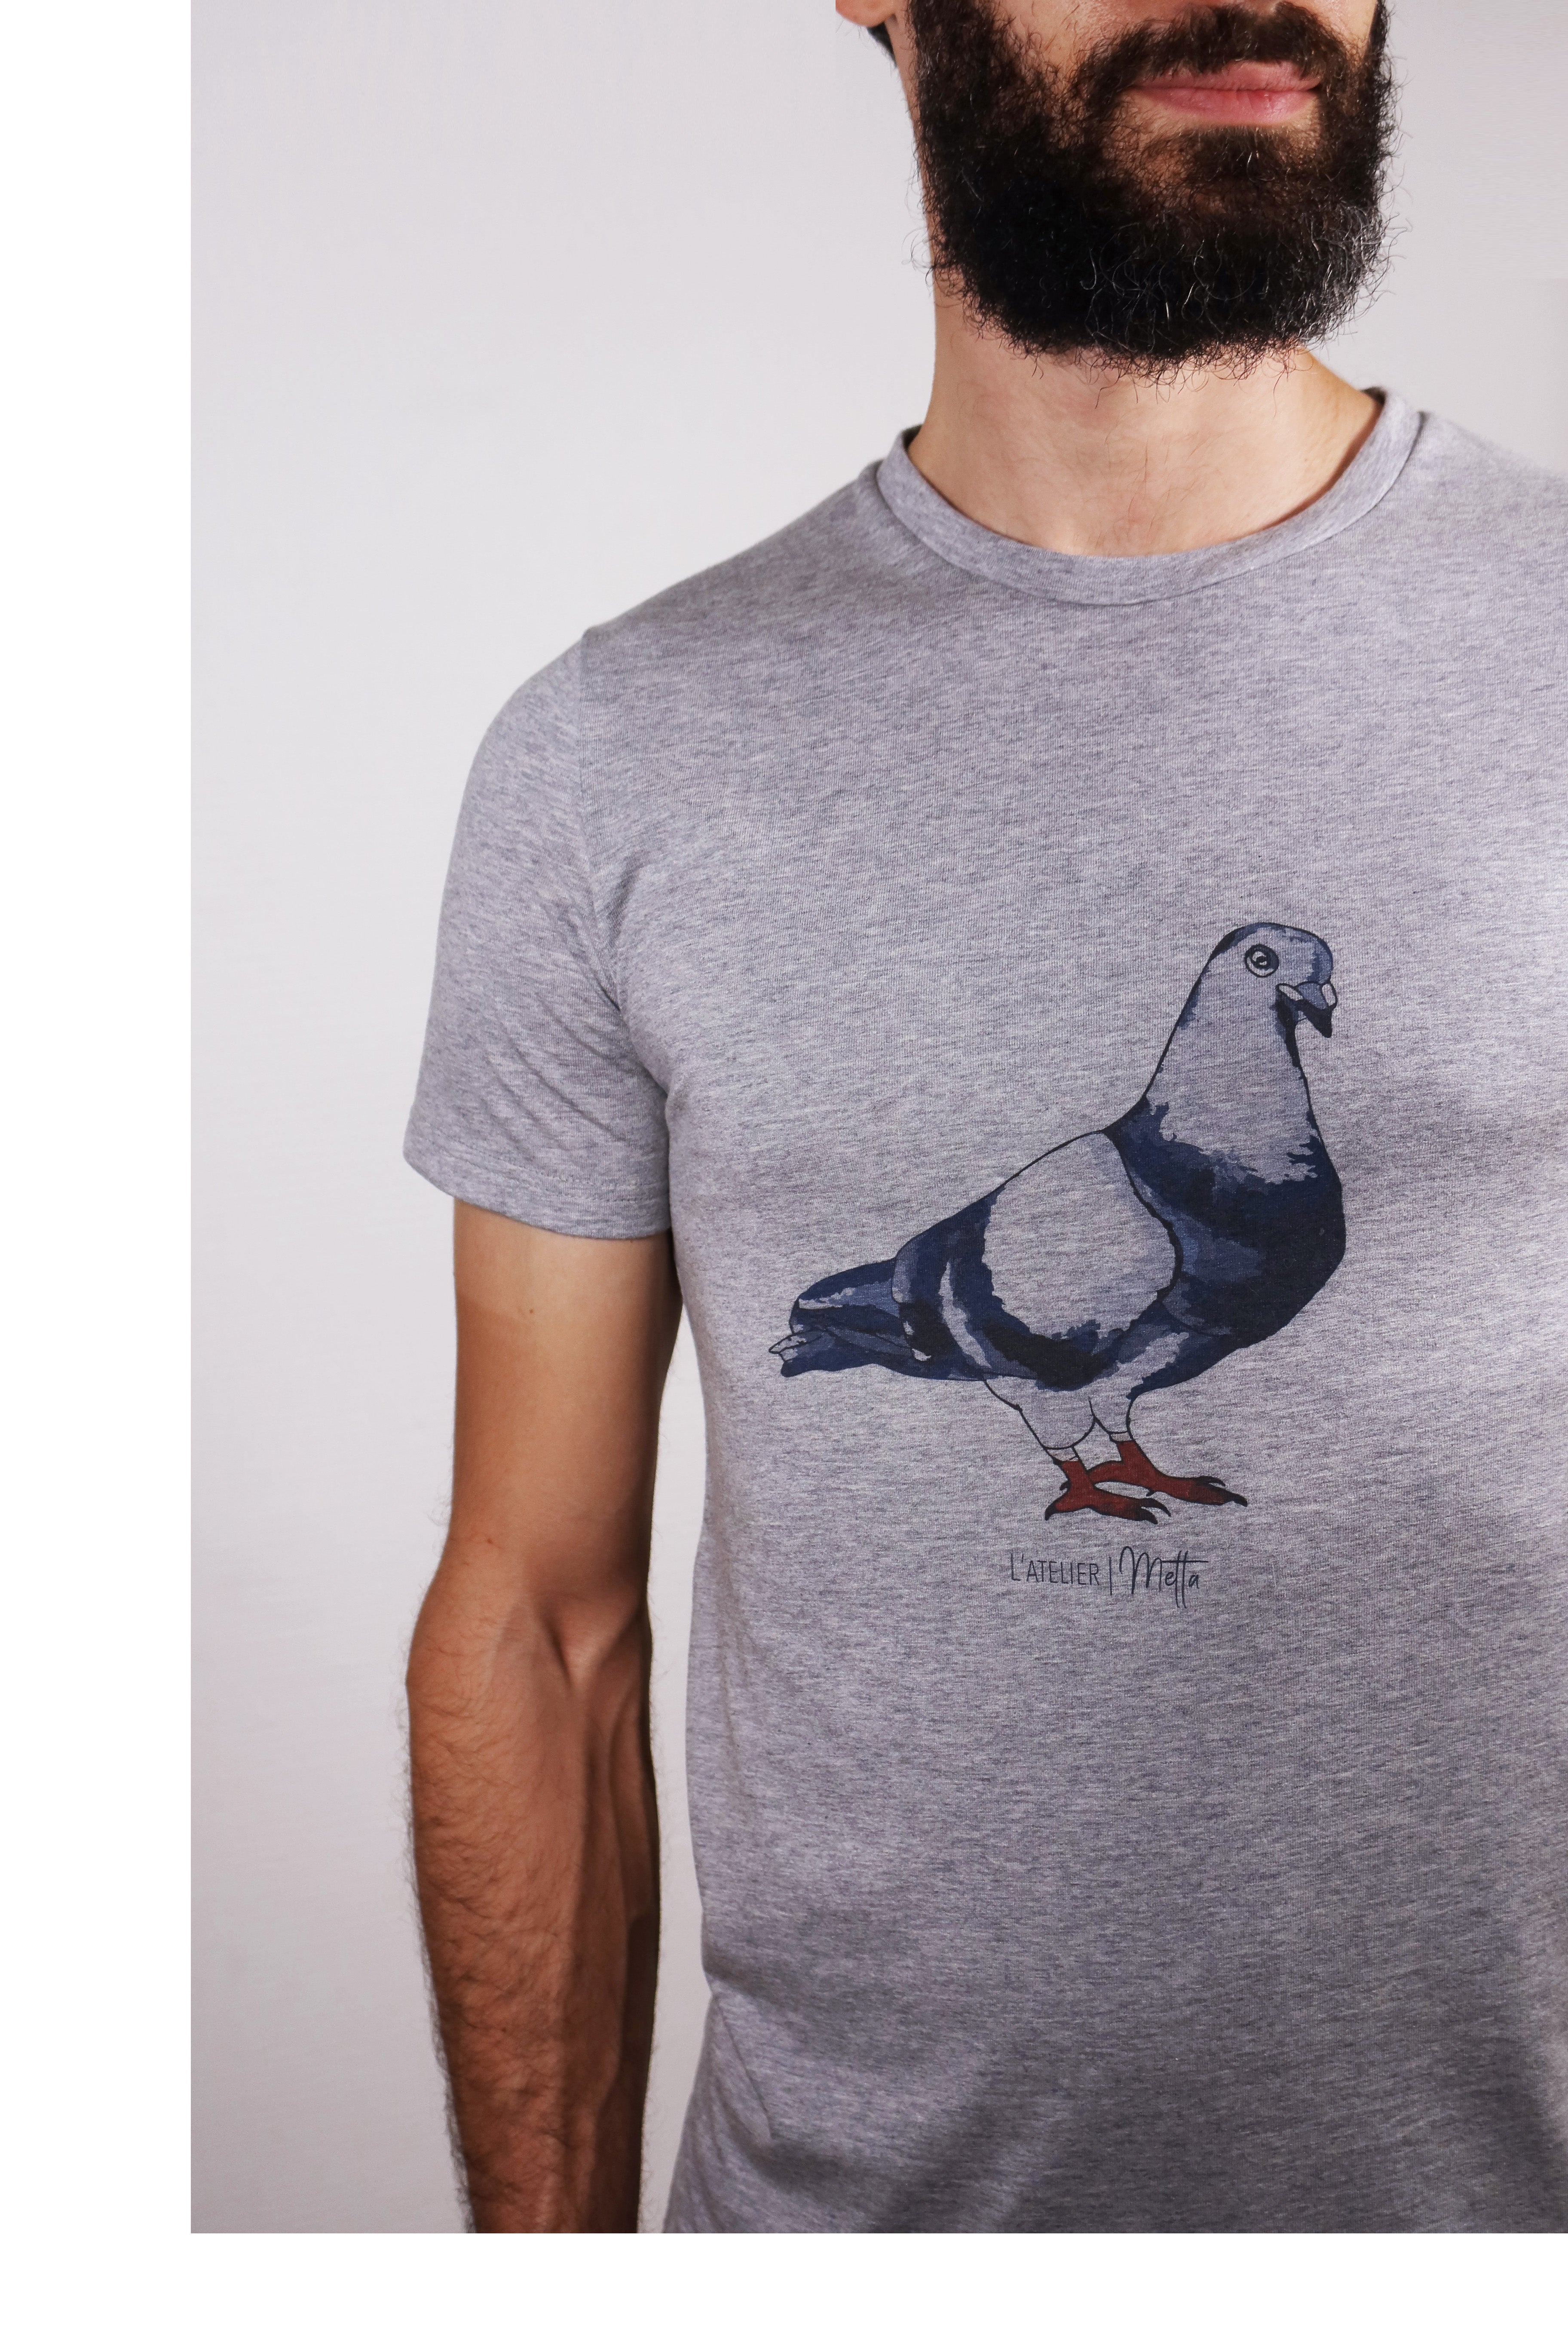 LE VOYAGEUR - Tshirt gris chiné imprimé pigeon